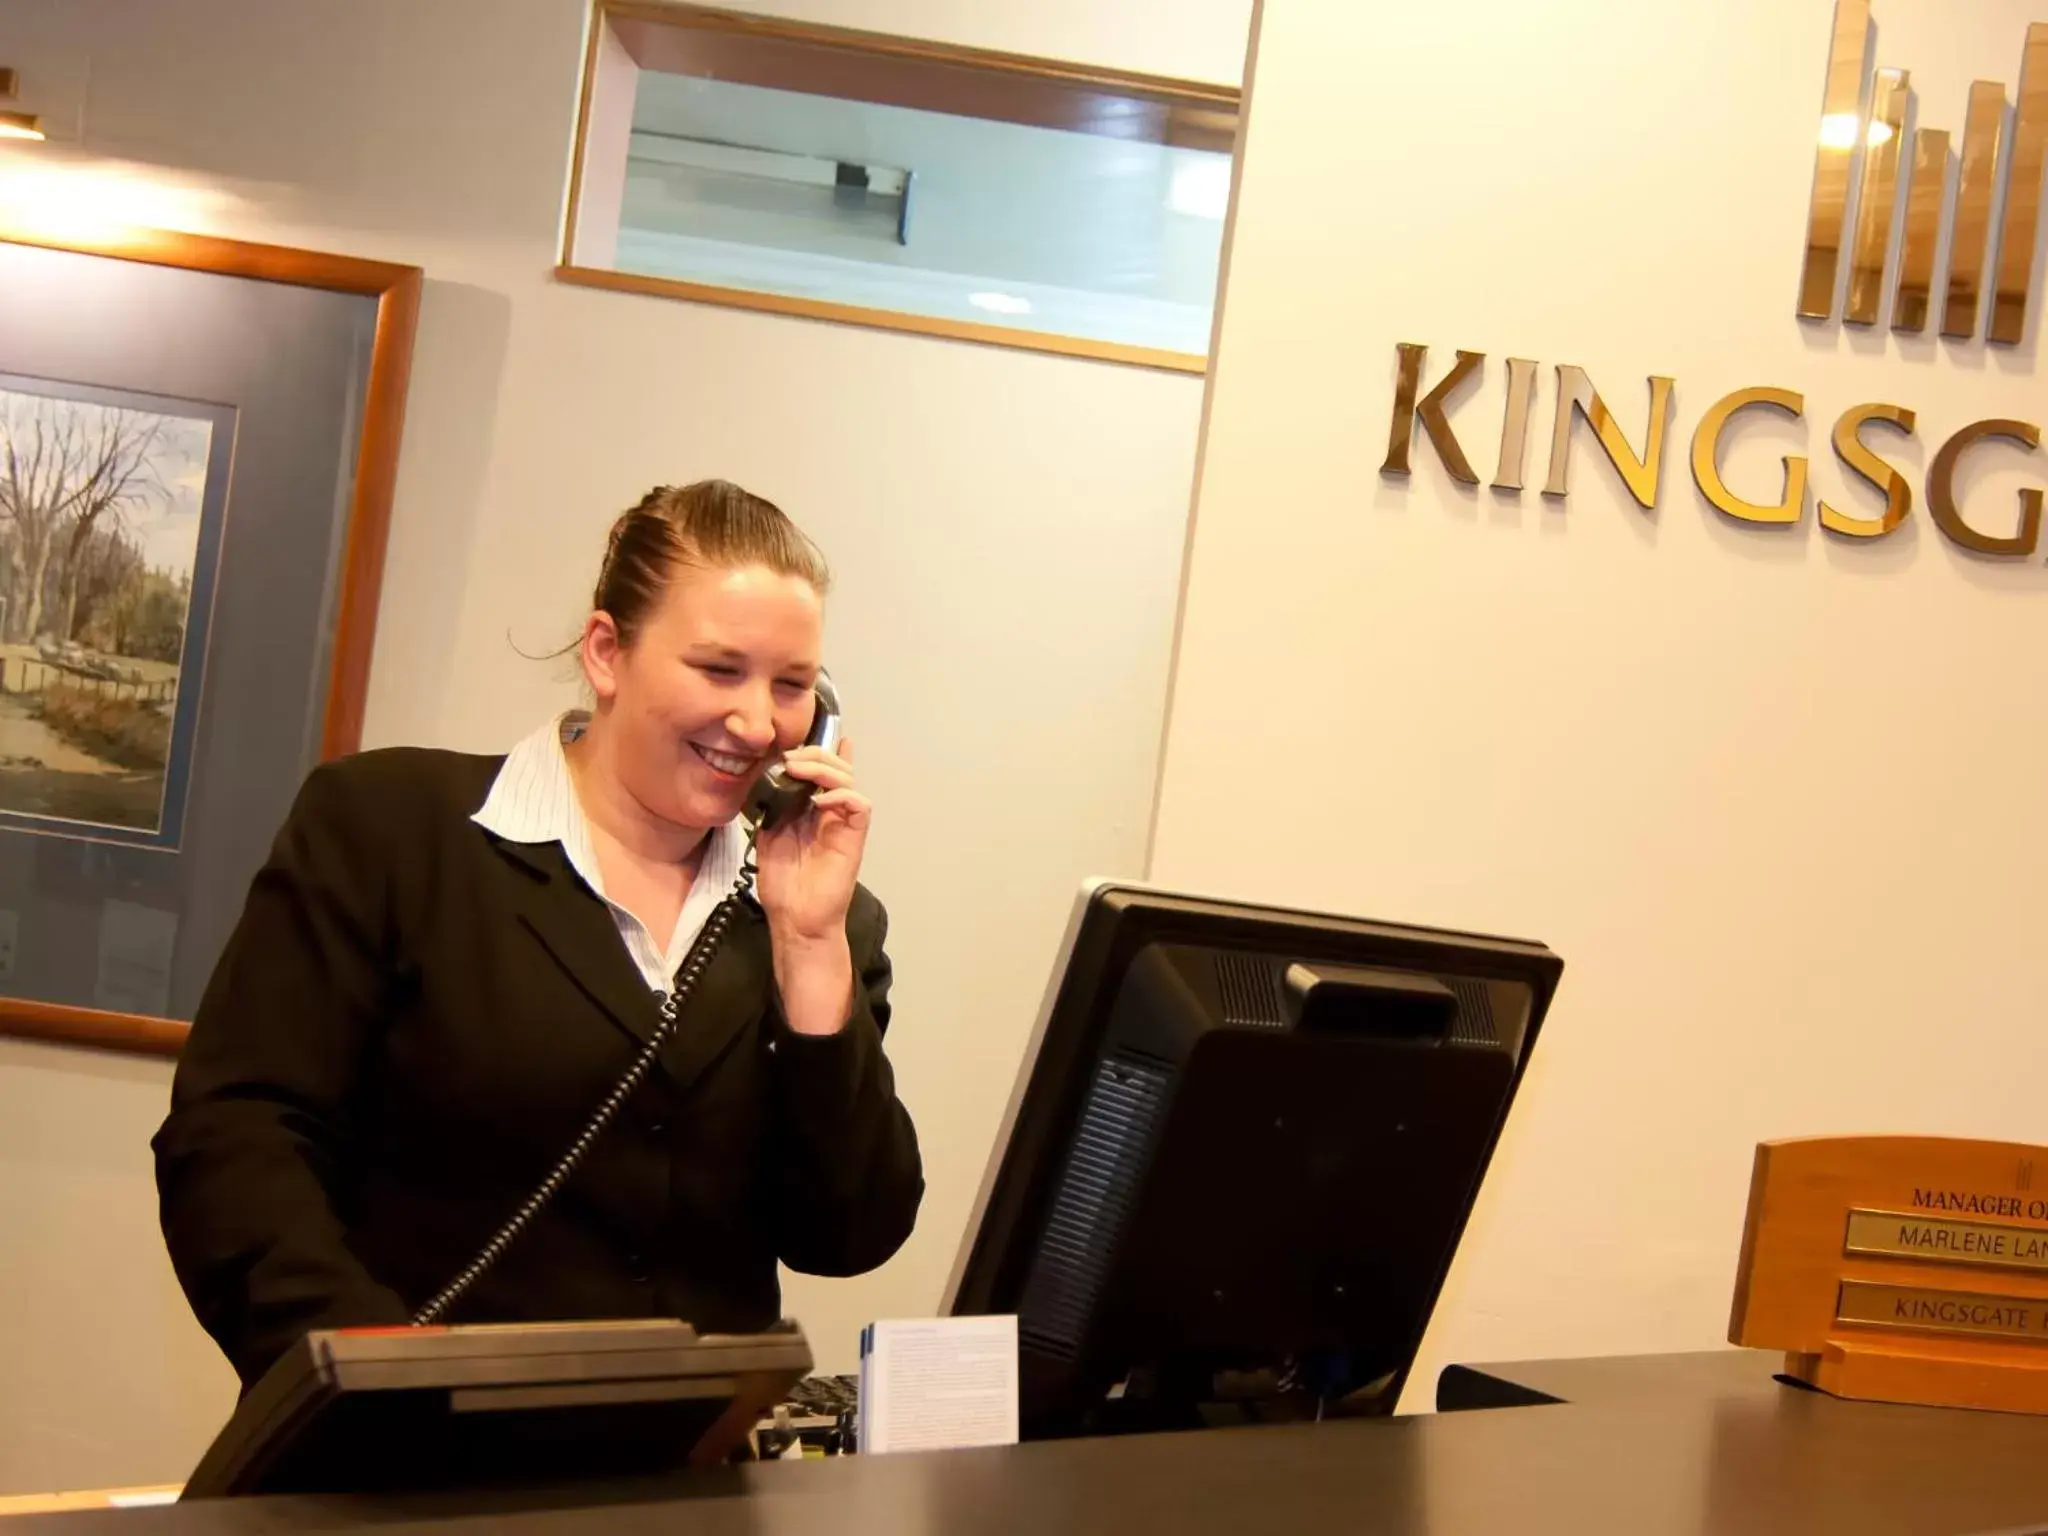 Staff in Kingsgate Hotel Dunedin